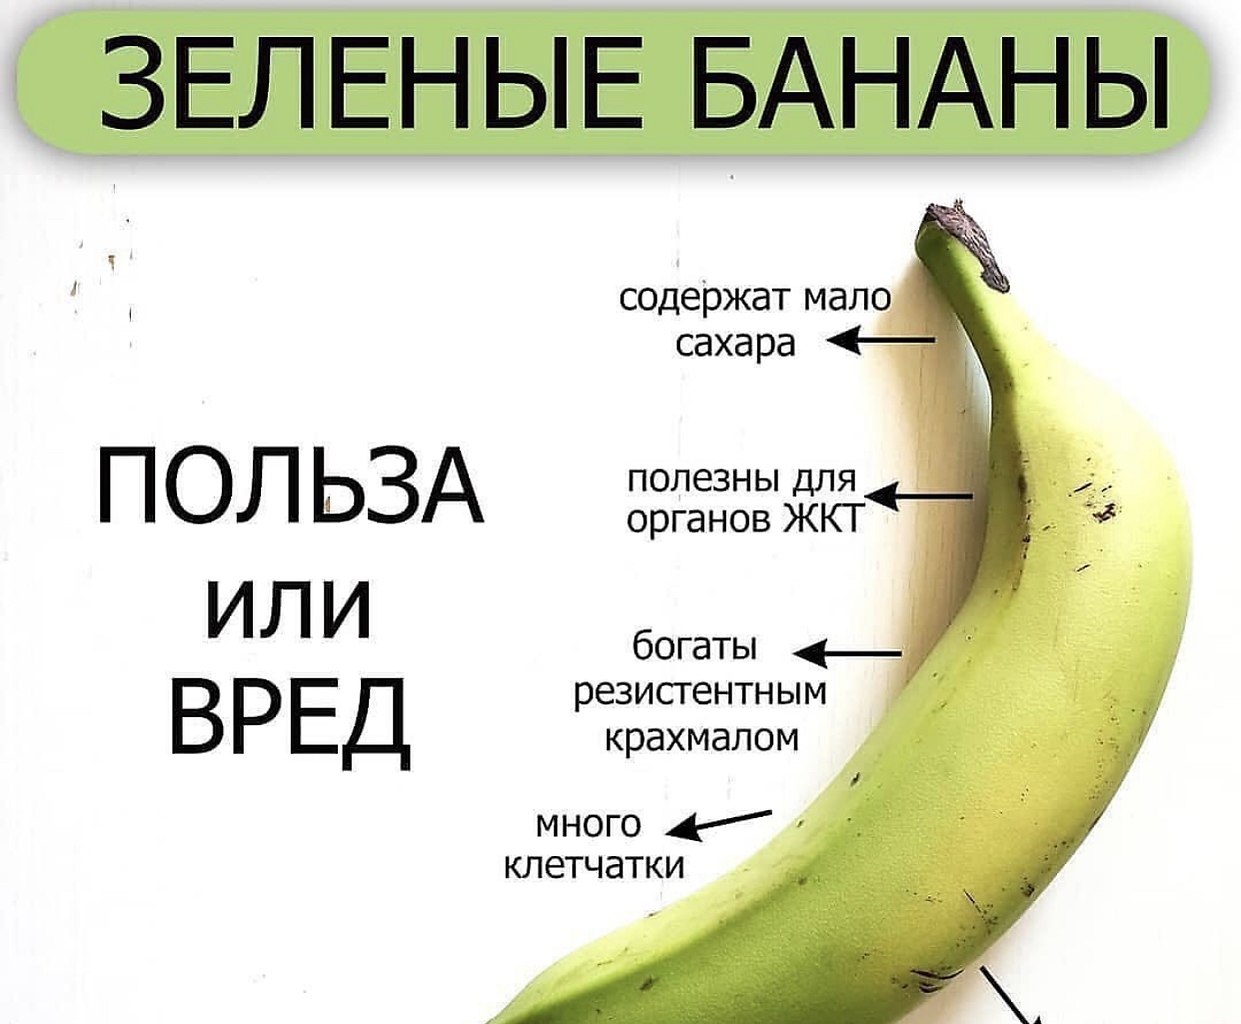 Бананы какой зрелости запрещено выставлять. Польза бананов. Зелёные бананы польза. Какие бананы полезно есть. Калорийность зеленых бананов.